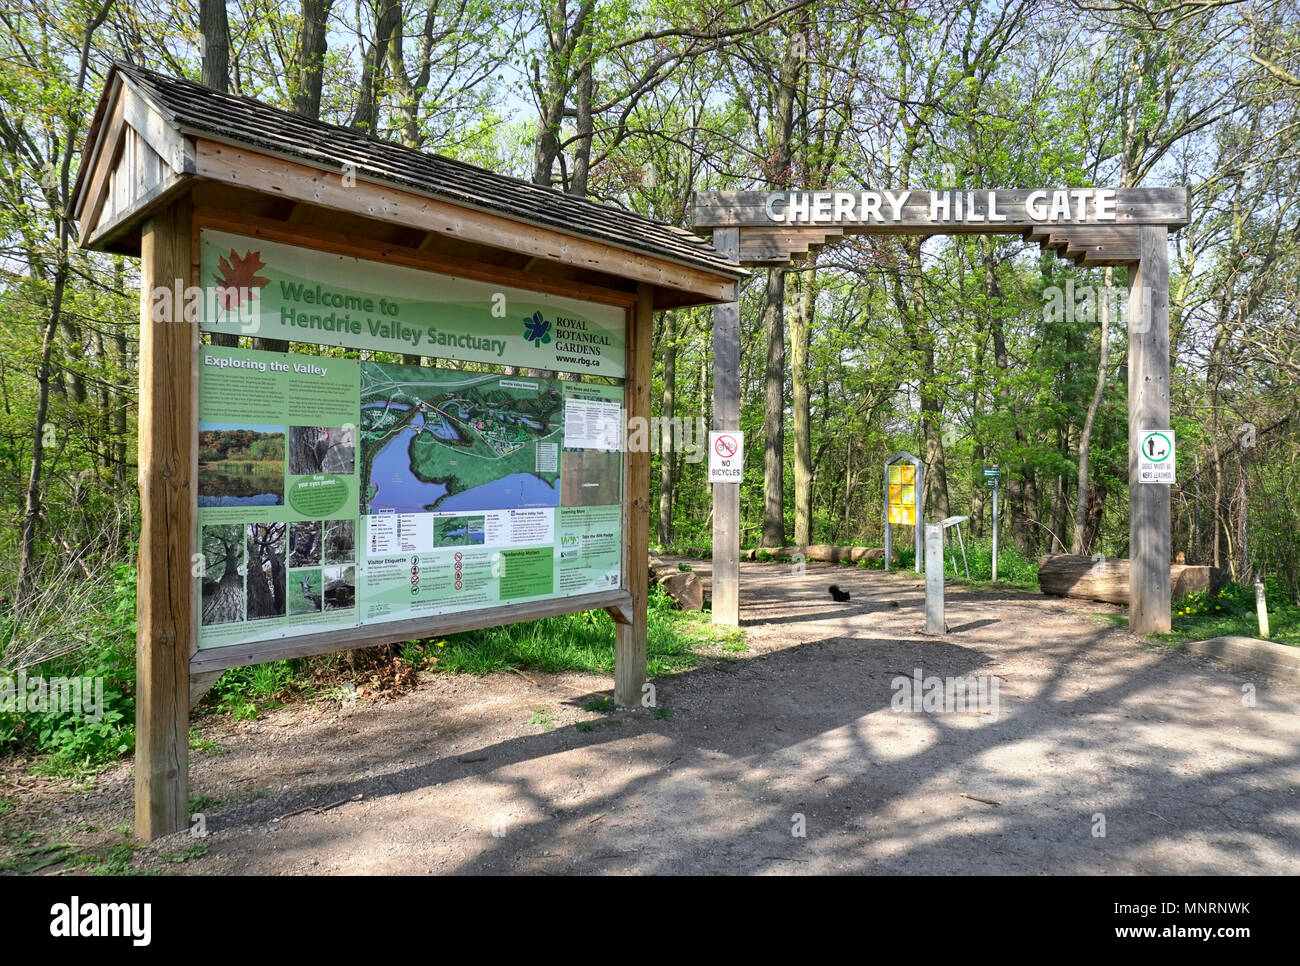 Cherry Hill Gate ingresso ai sentieri per le escursioni in Hendrie Valley Sanctuary in Royal Botanical Gardens, Burlington, Ontario, Canada. Lo scoiattolo e Scoiattolo striado Foto Stock